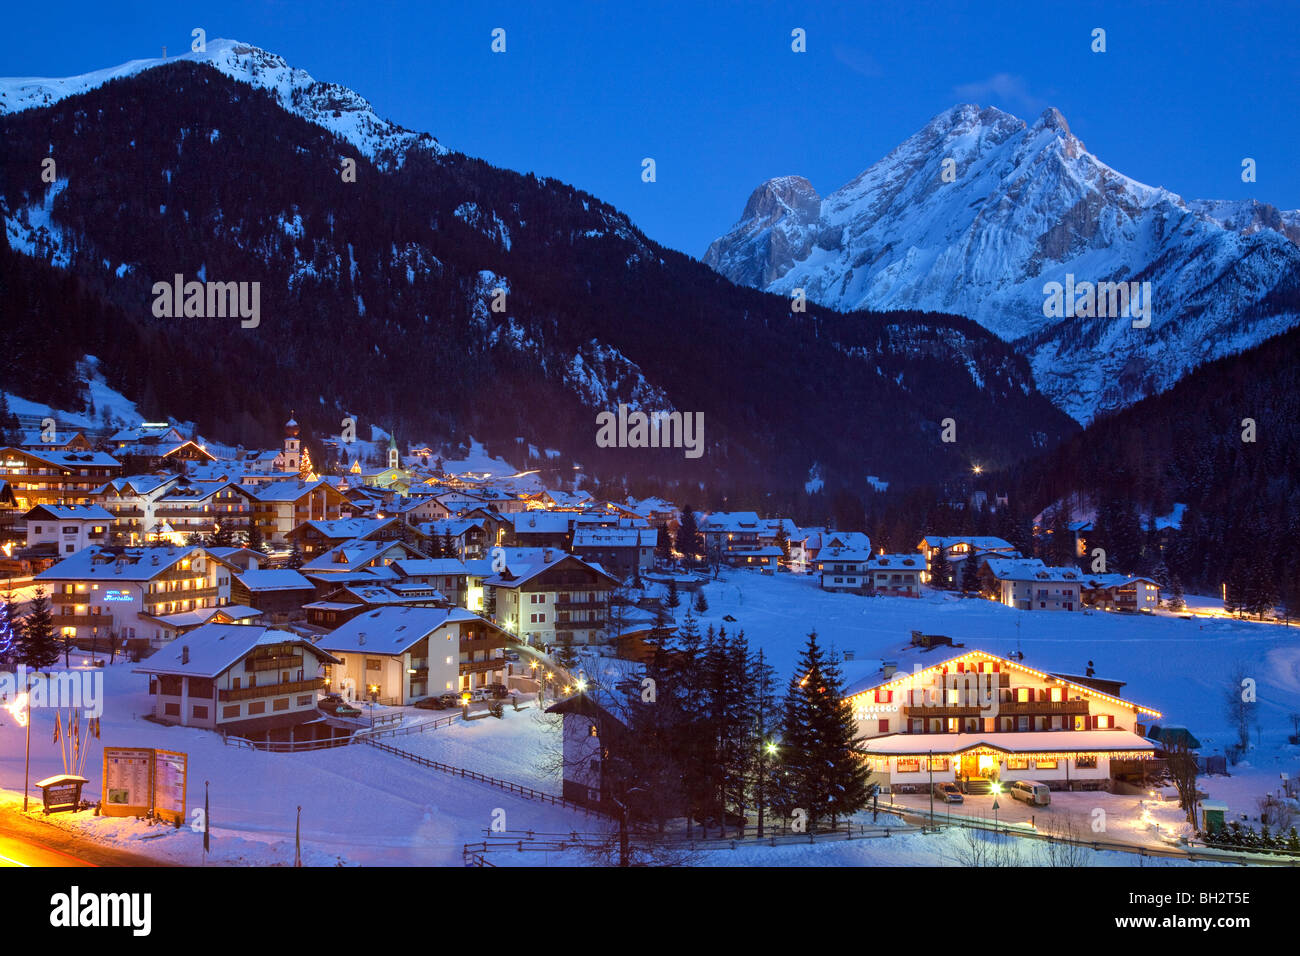 Village de Canazei dans la neige de l'hiver, les Dolomites, Val di Fassa, Italie, Europe Banque D'Images